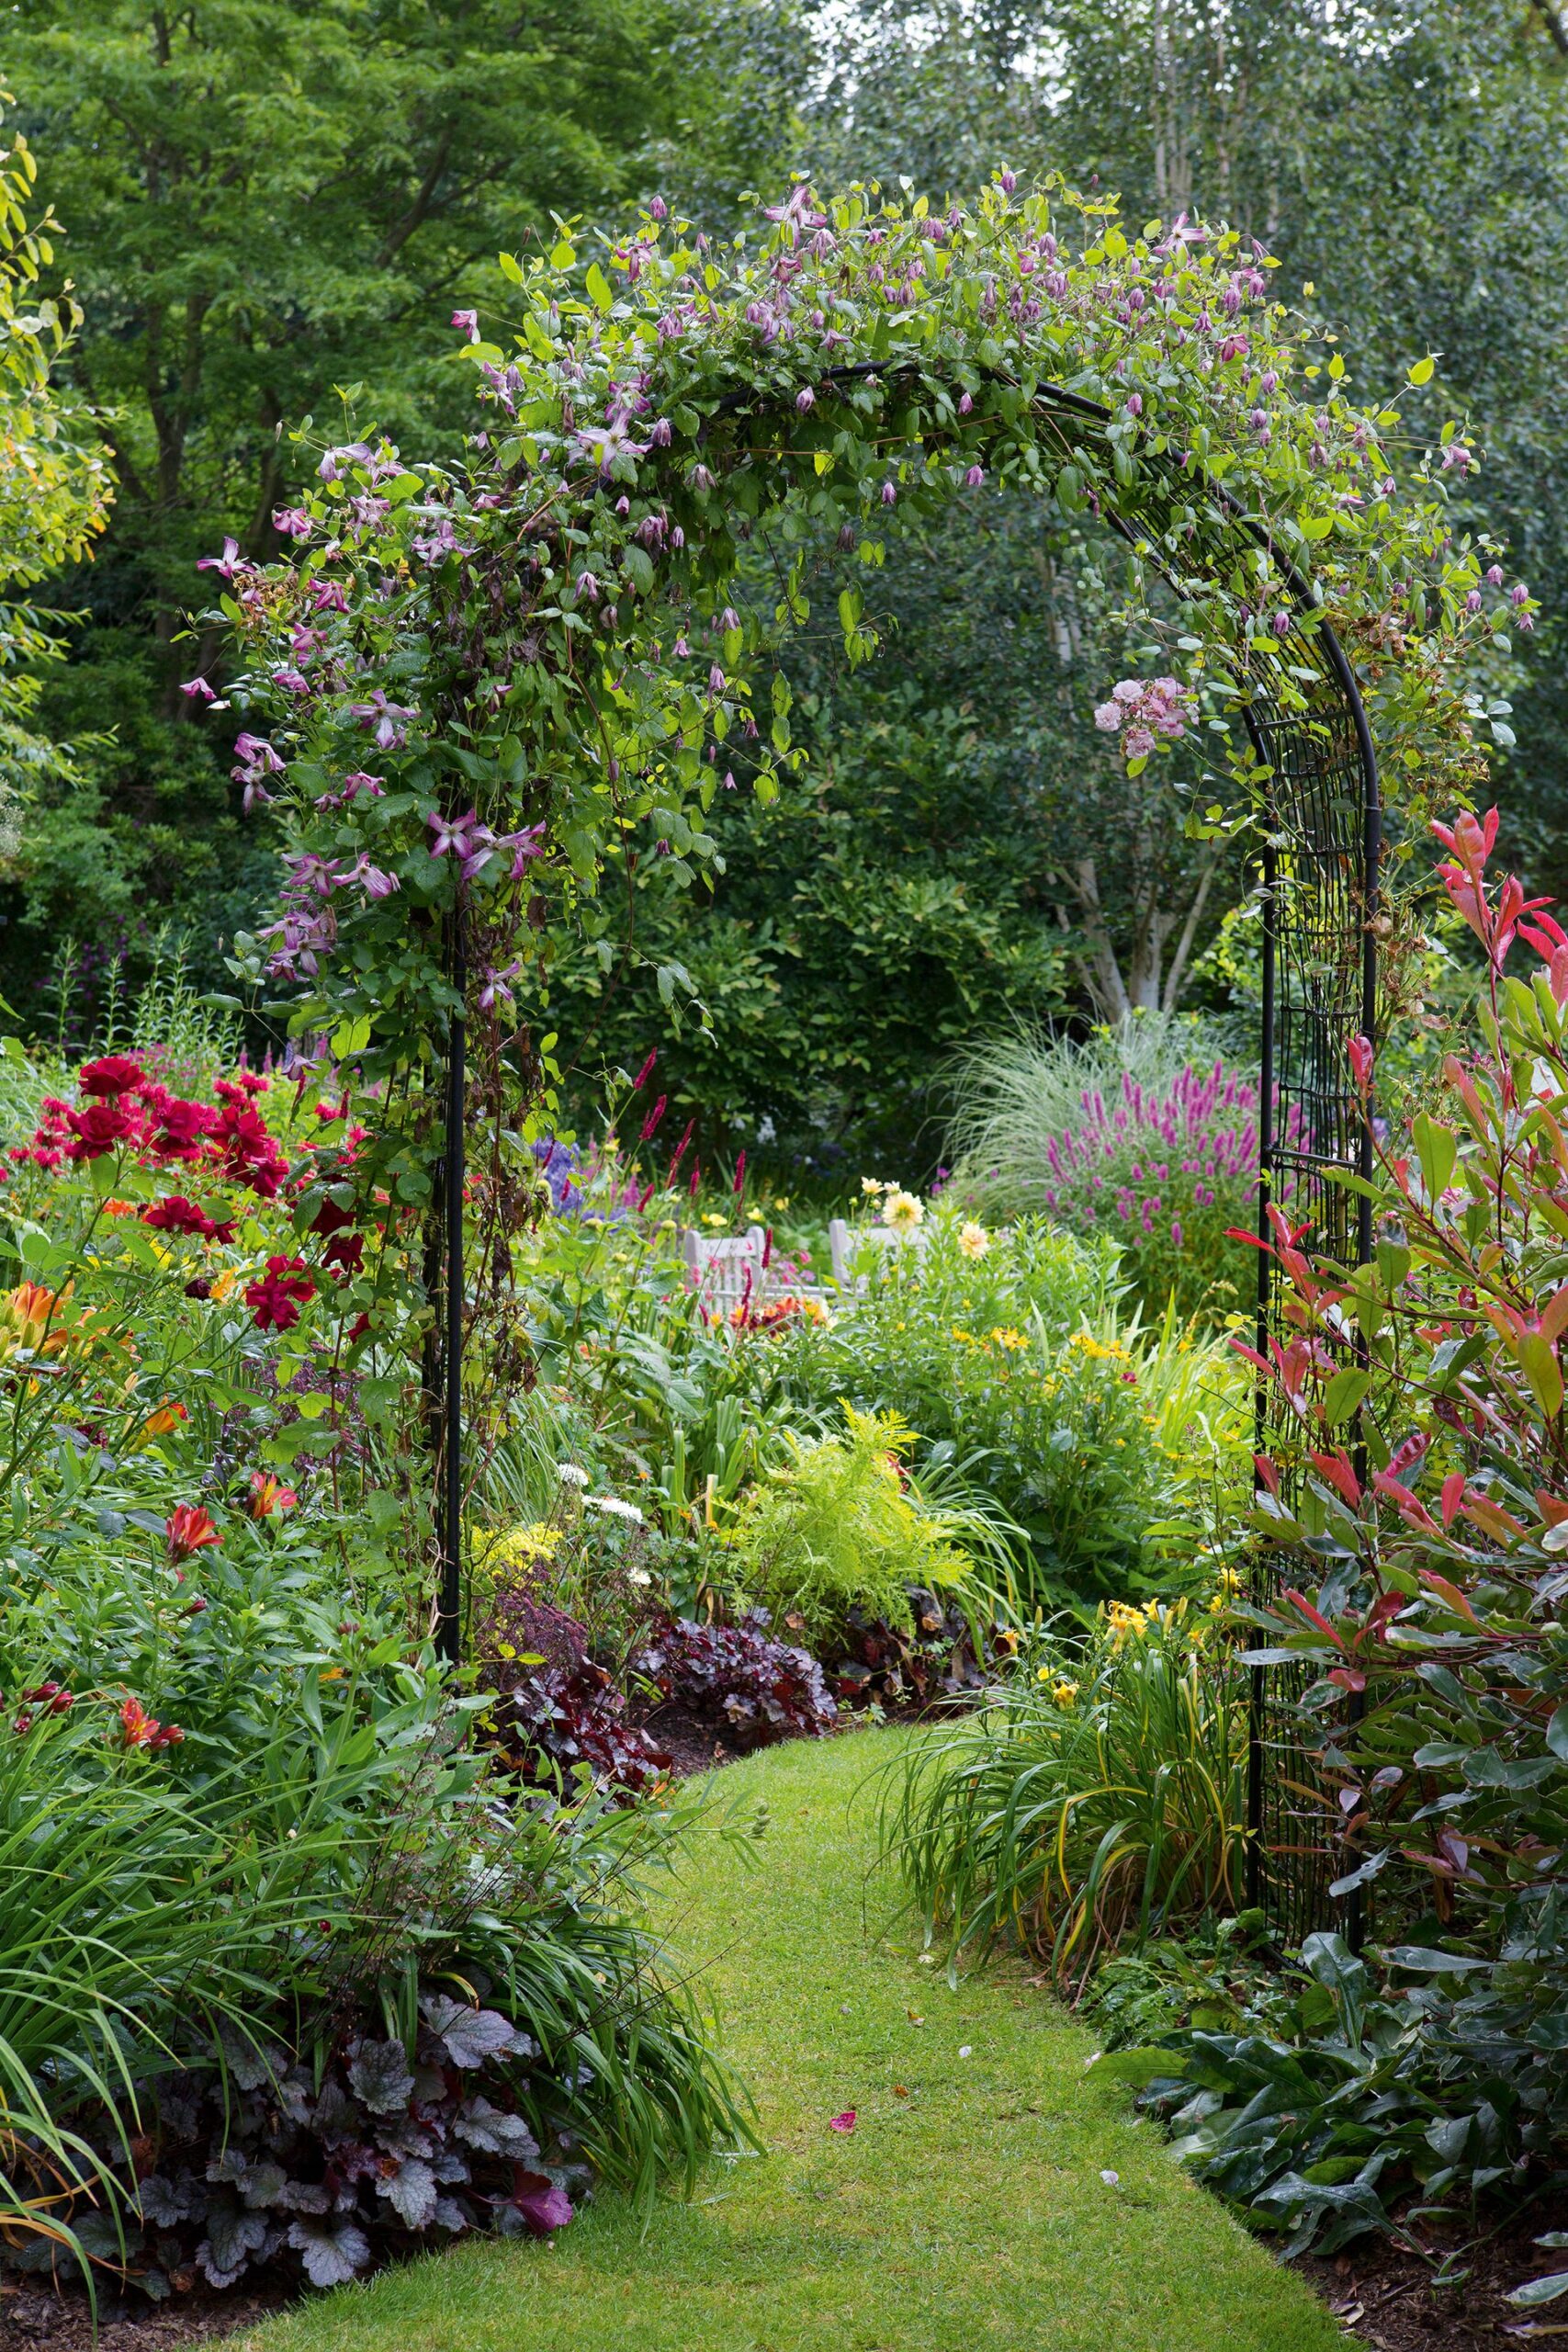 Growing a Beautiful Backyard Garden: Tips and Inspiration